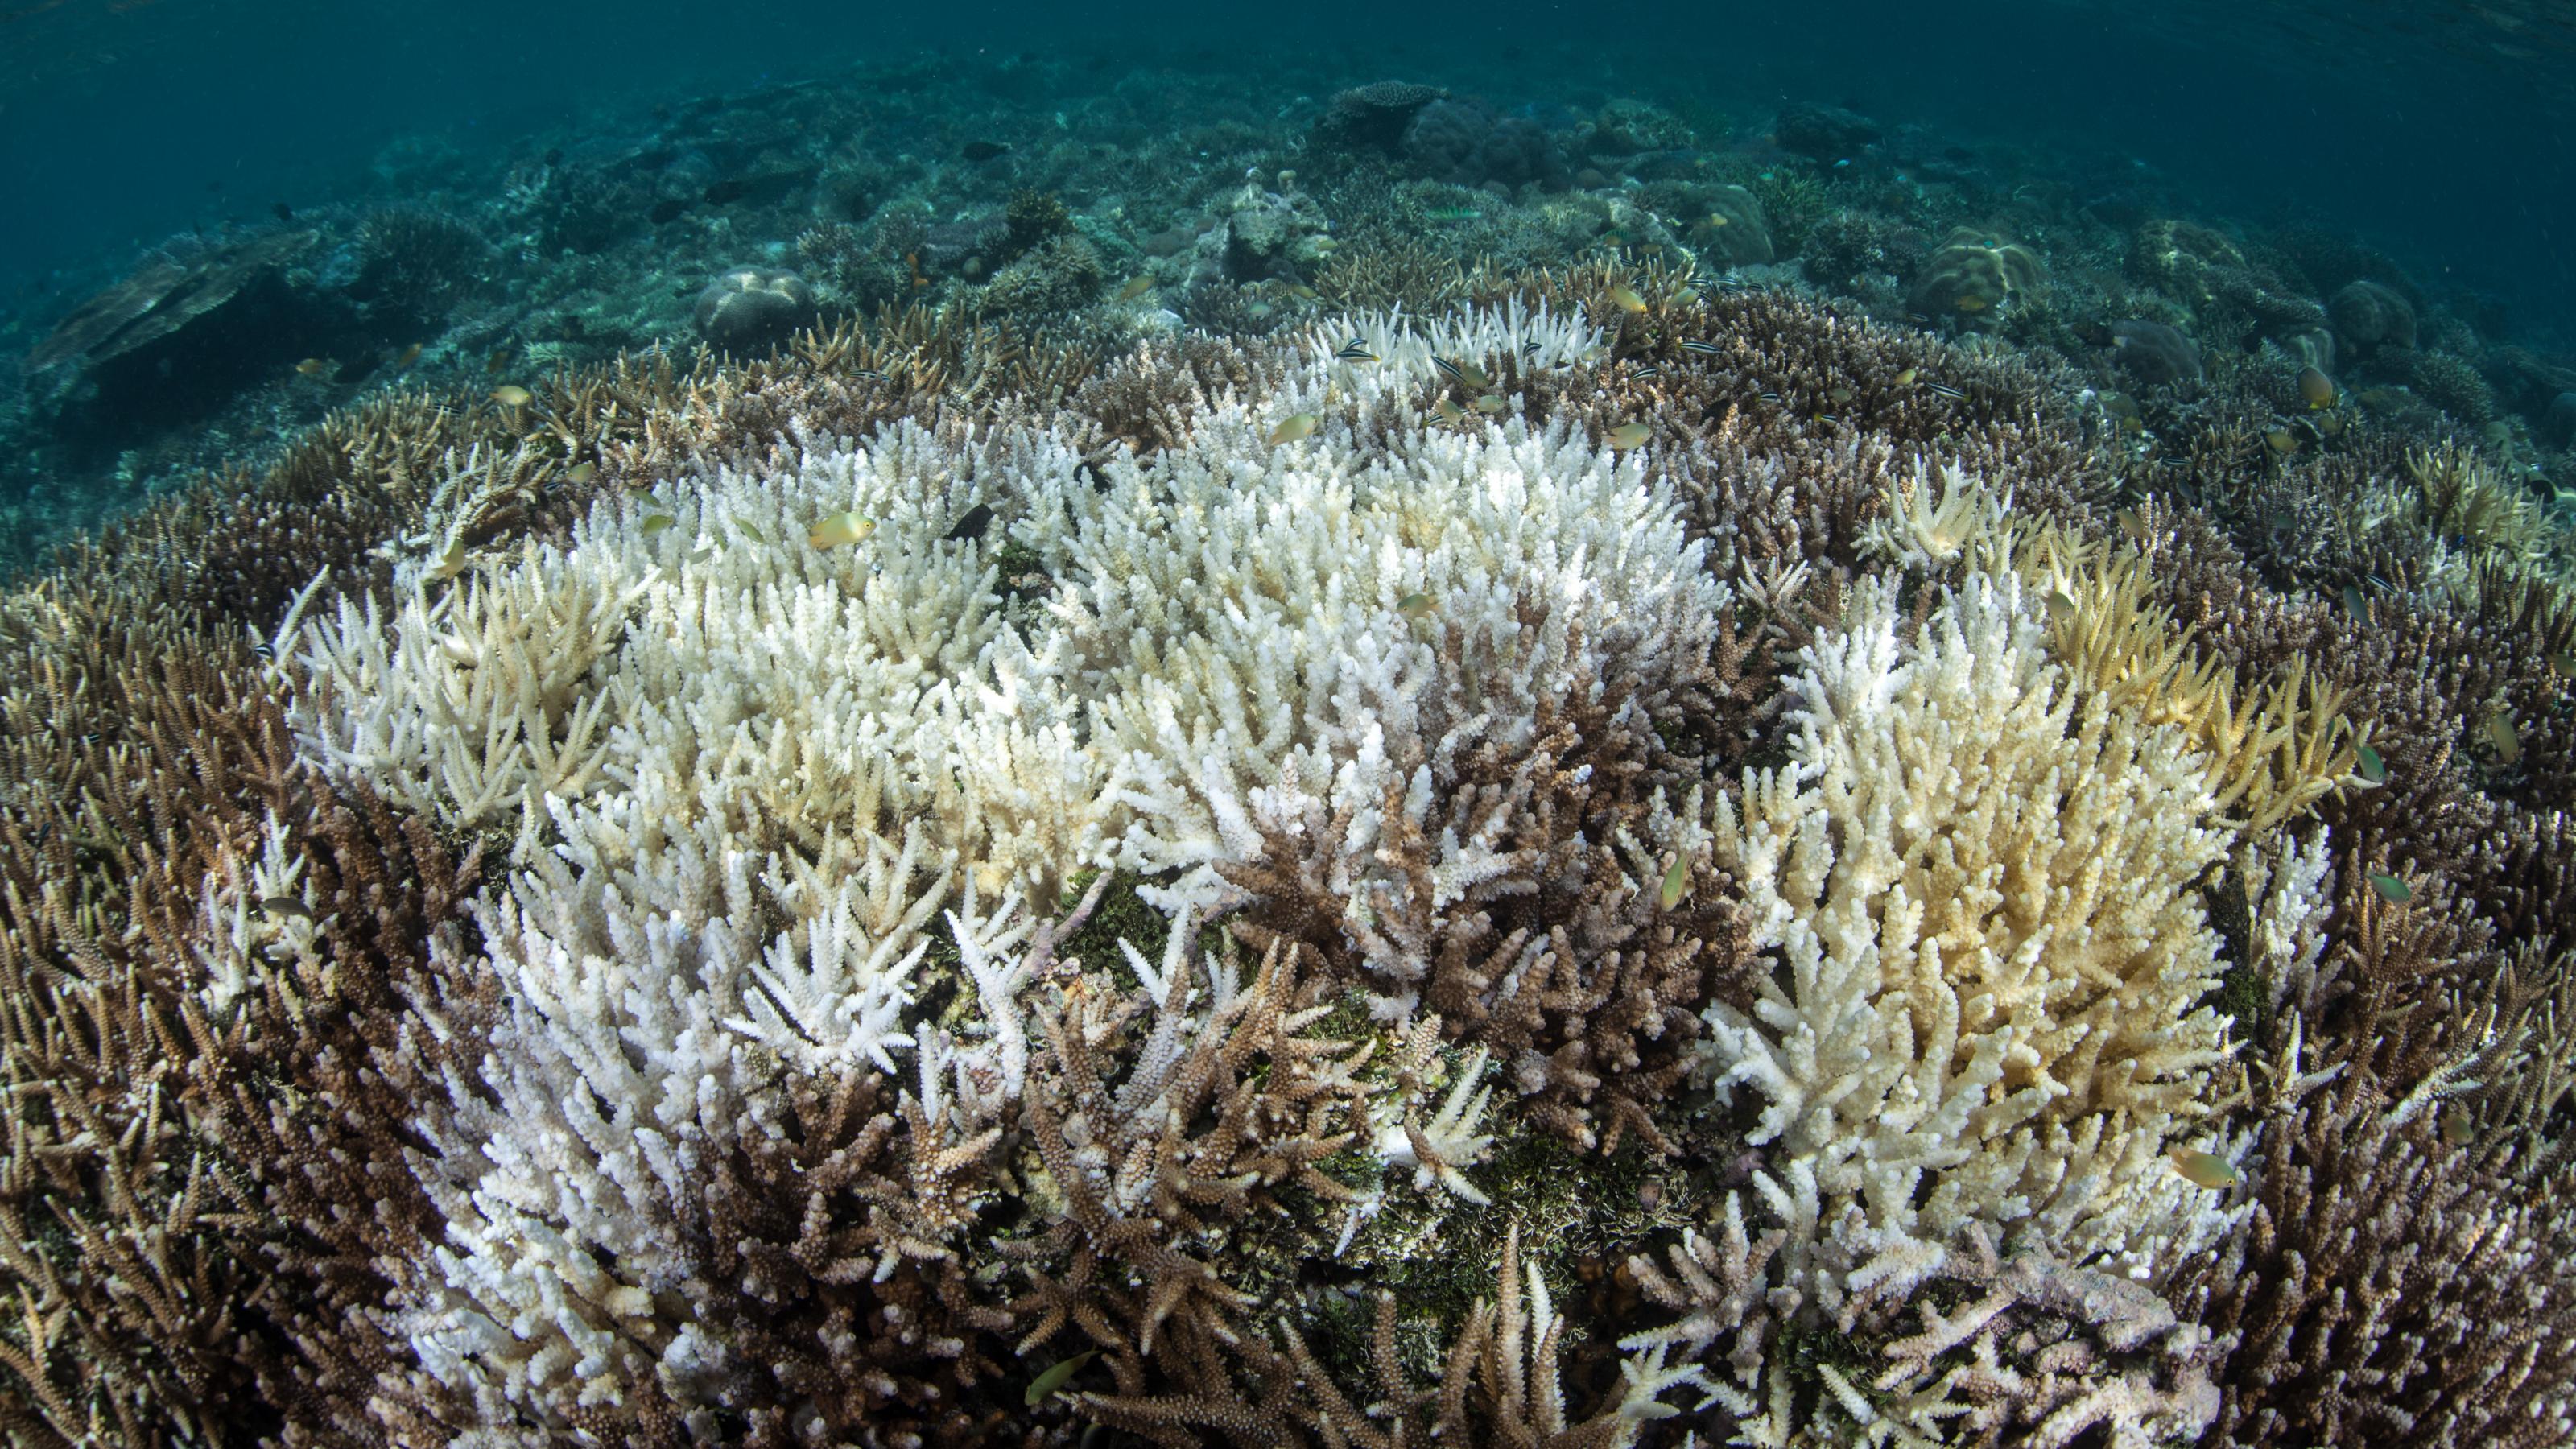 Im Meer sieht man mehrere graue und weiße Korallen – eine Korallenbleiche.